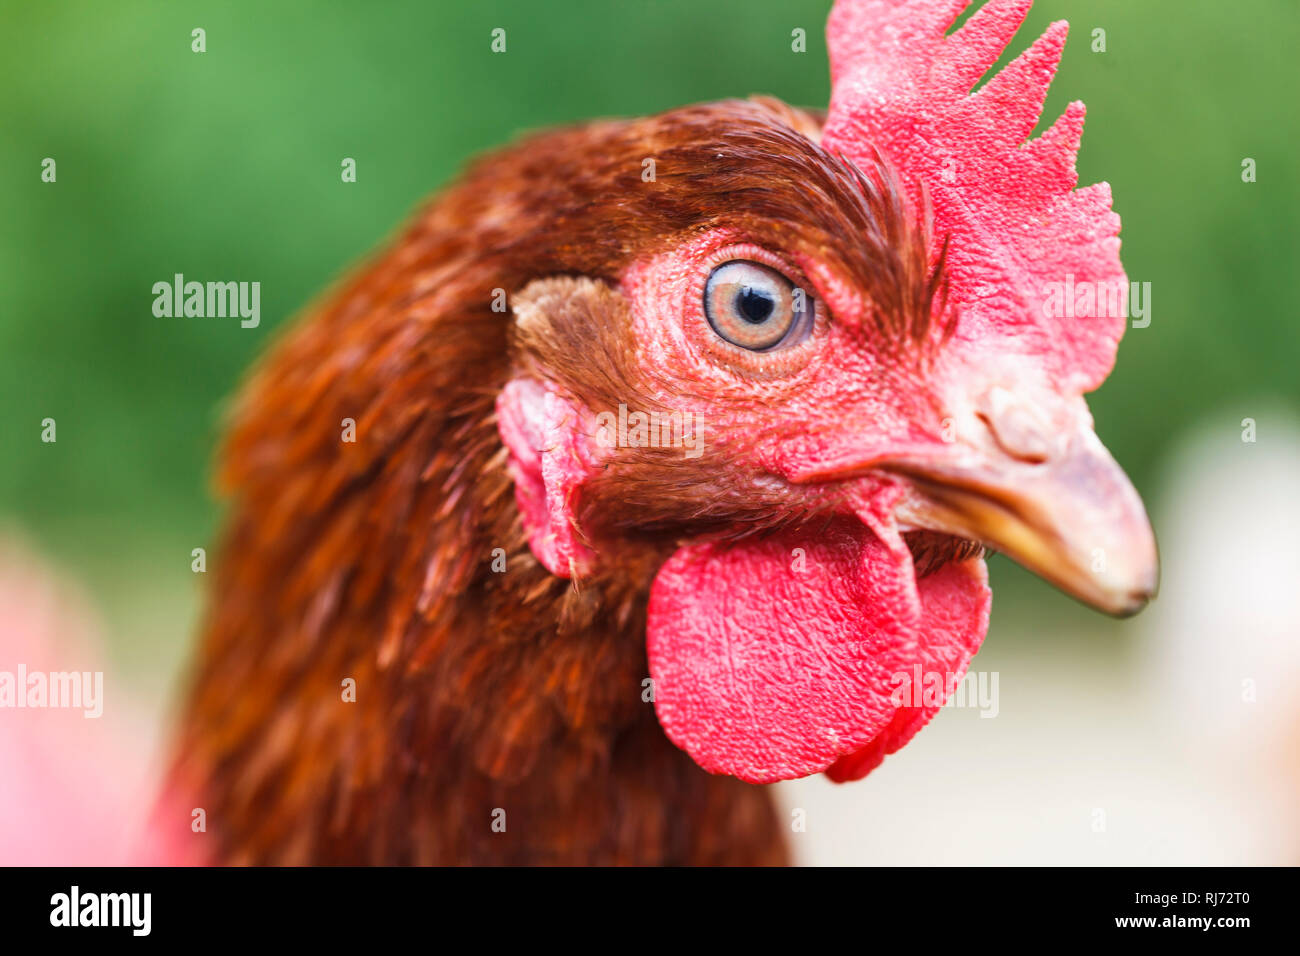 Ein Huhn beobachtet seine Umwelt, Stock Photo